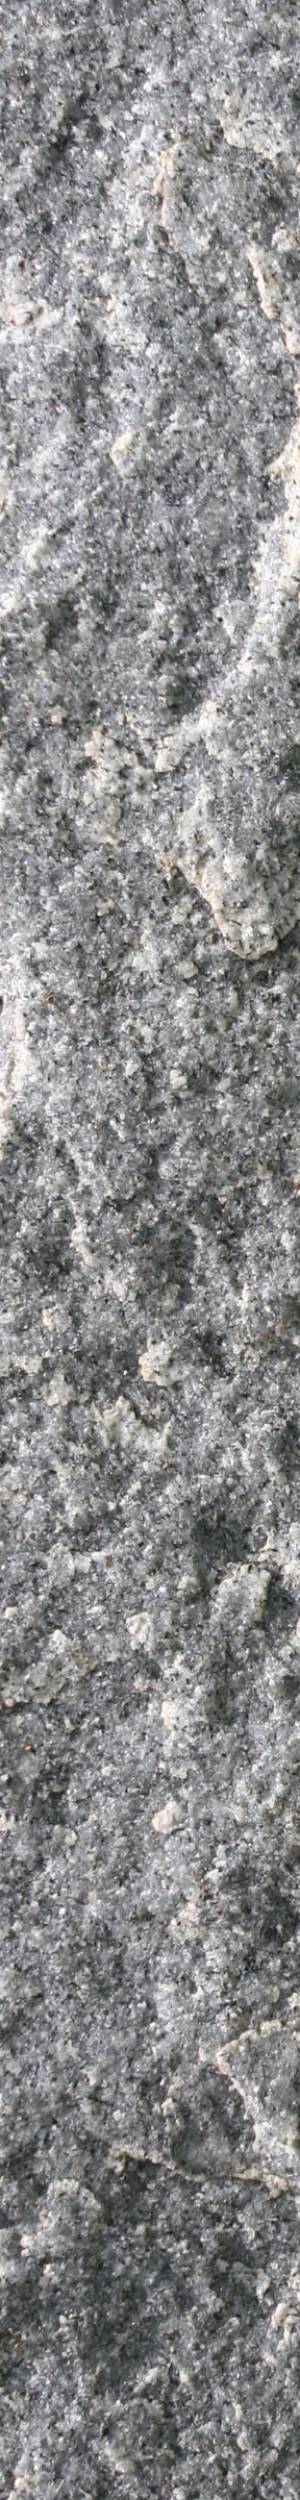 Stone-texture02